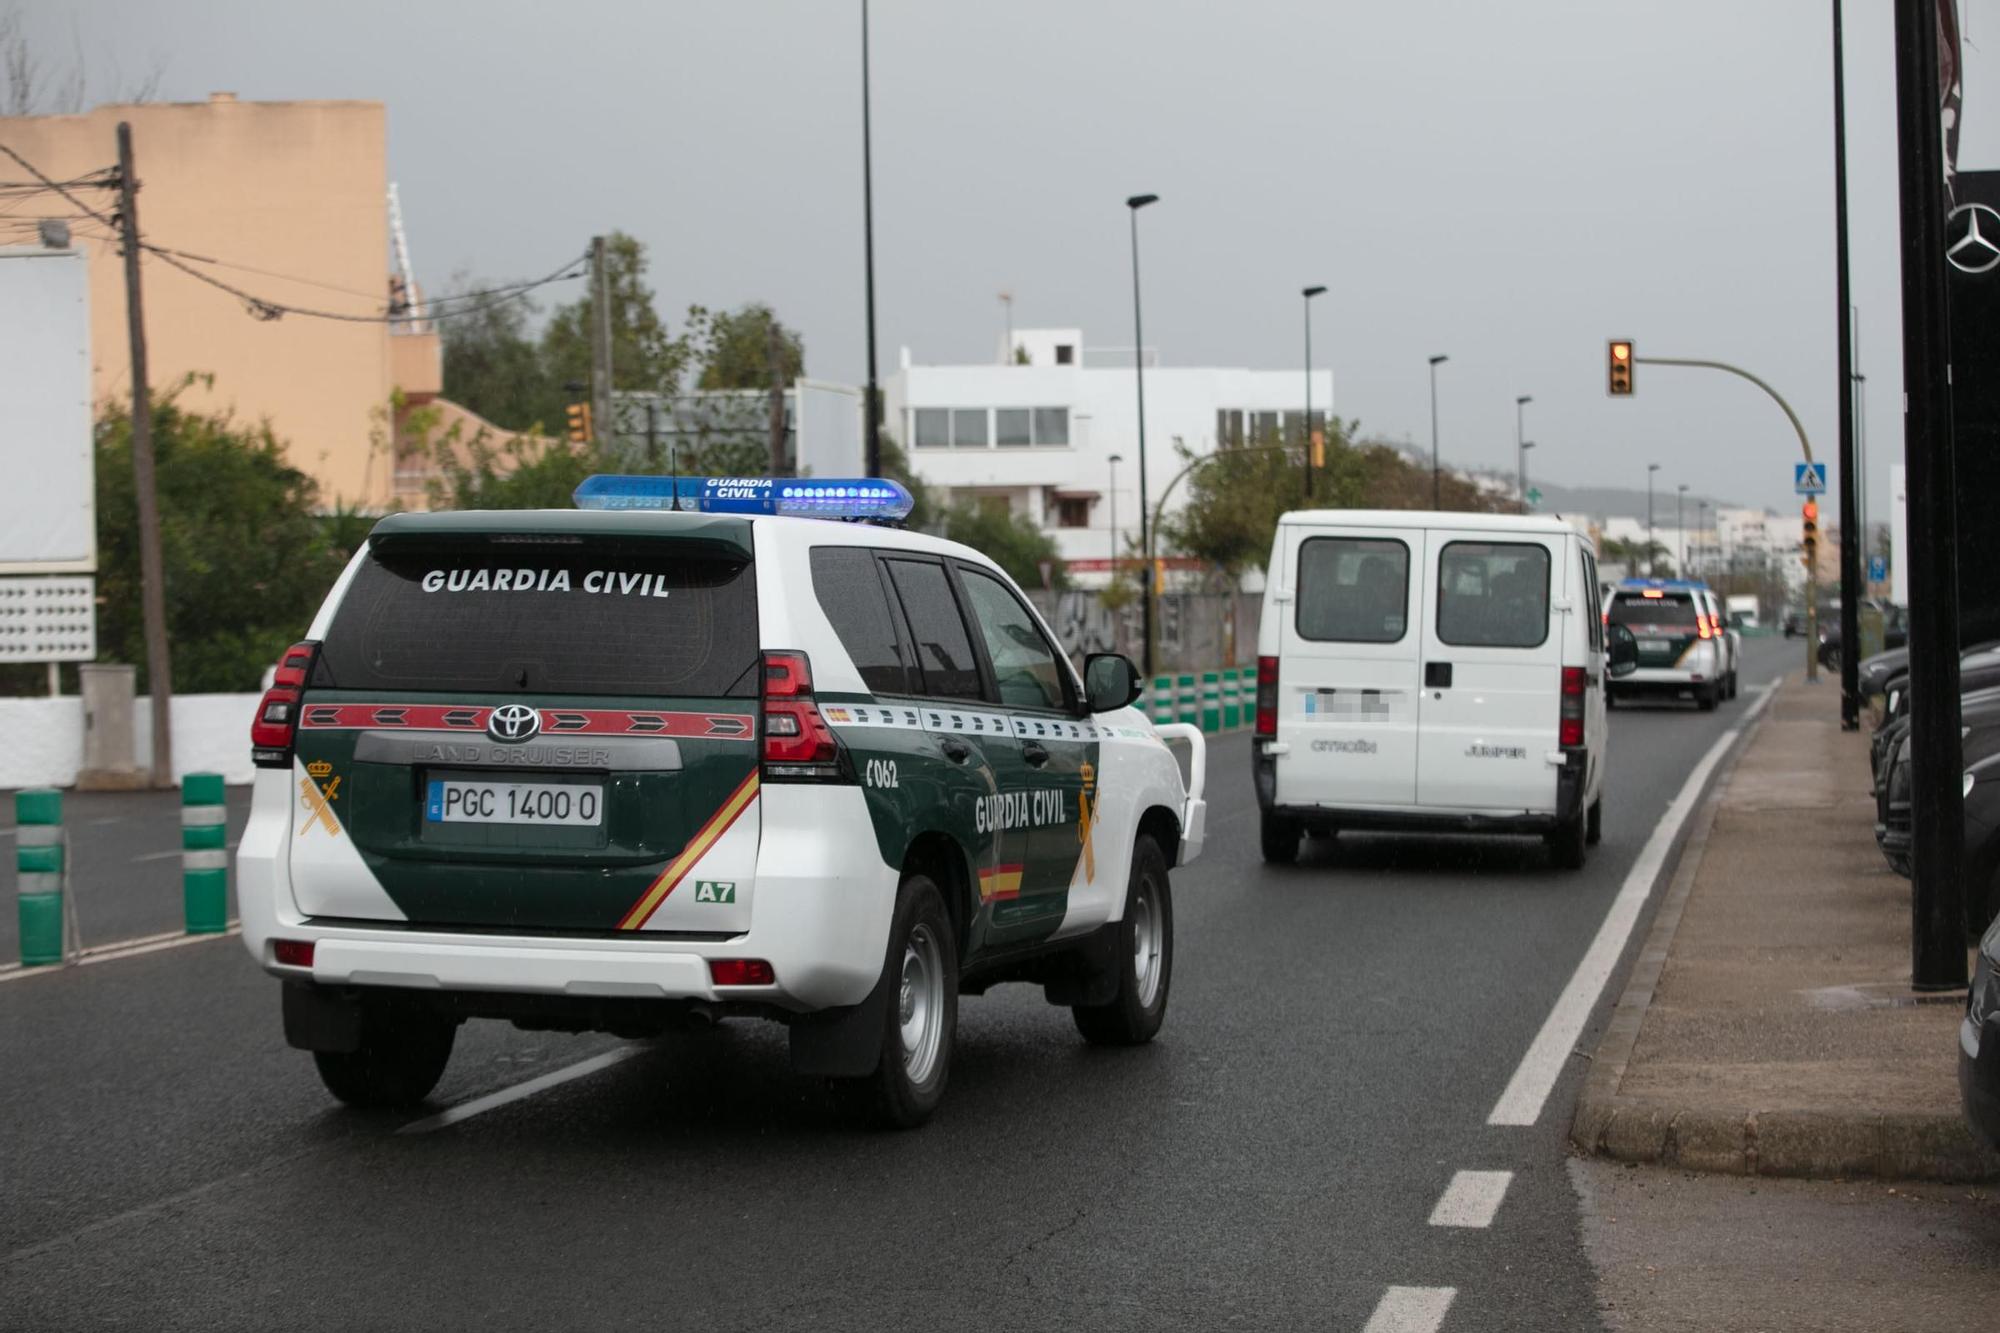 Galería: Operación antidrogas en Ibiza